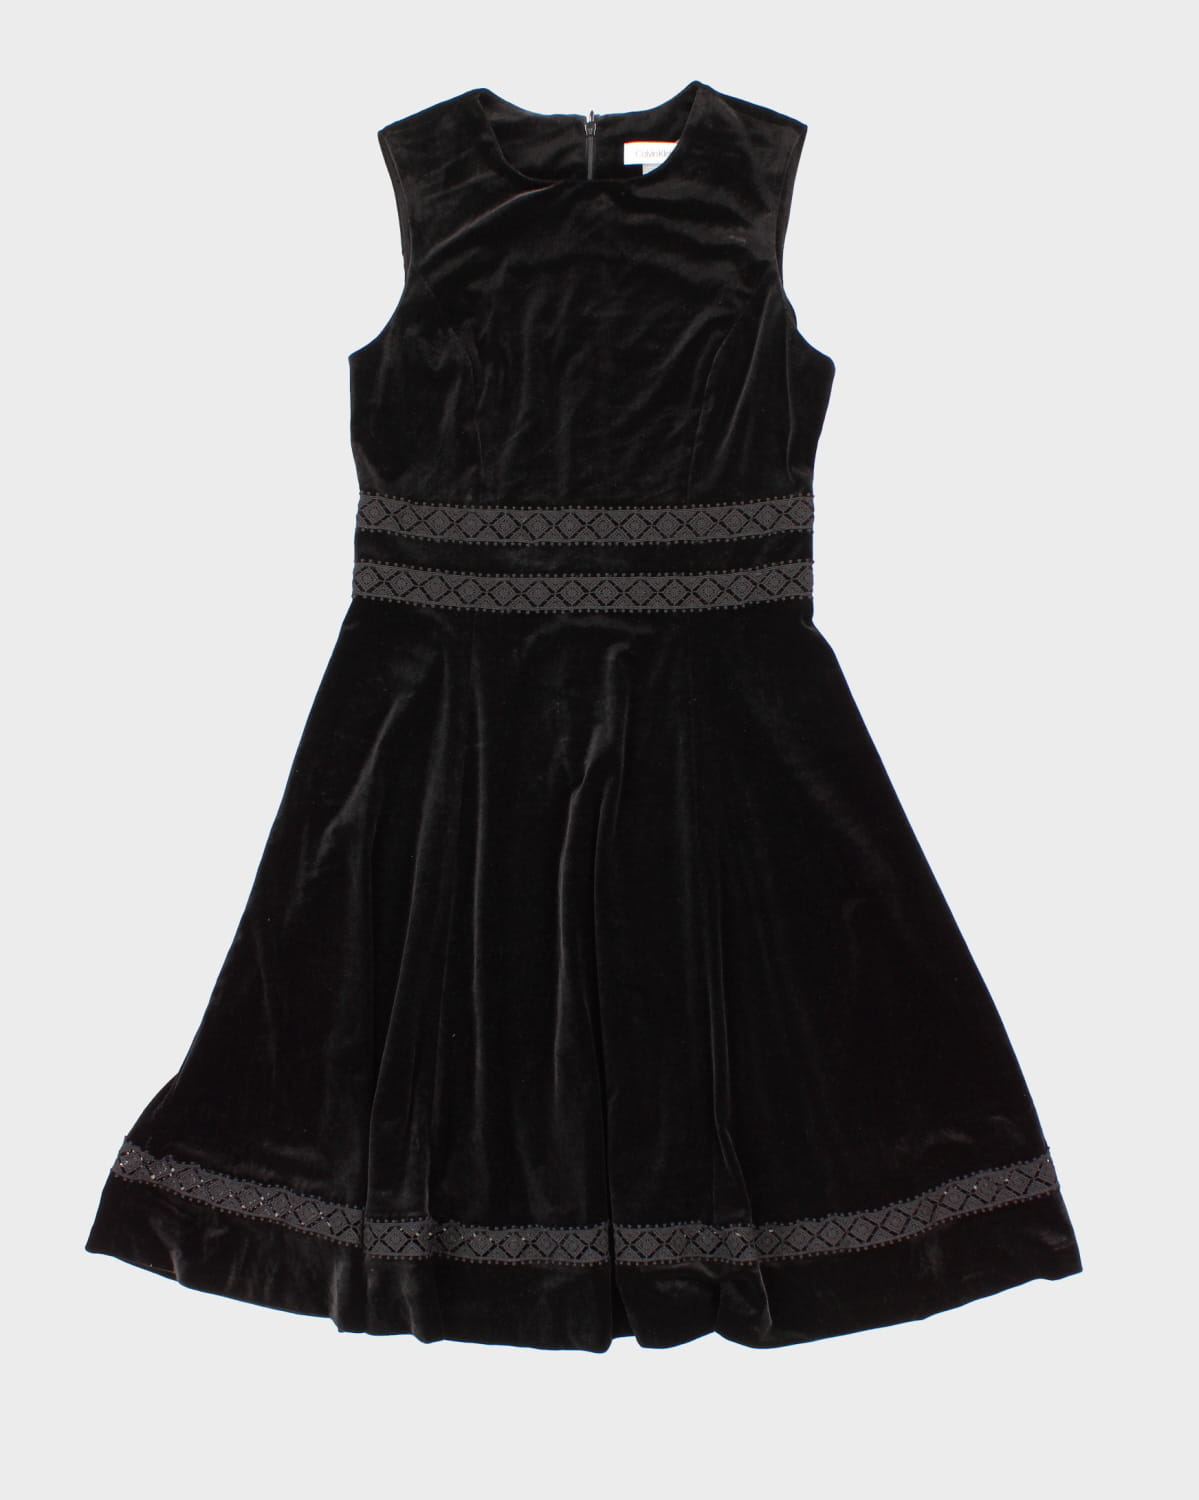 All Black Velour Calvin Klein Dress - S